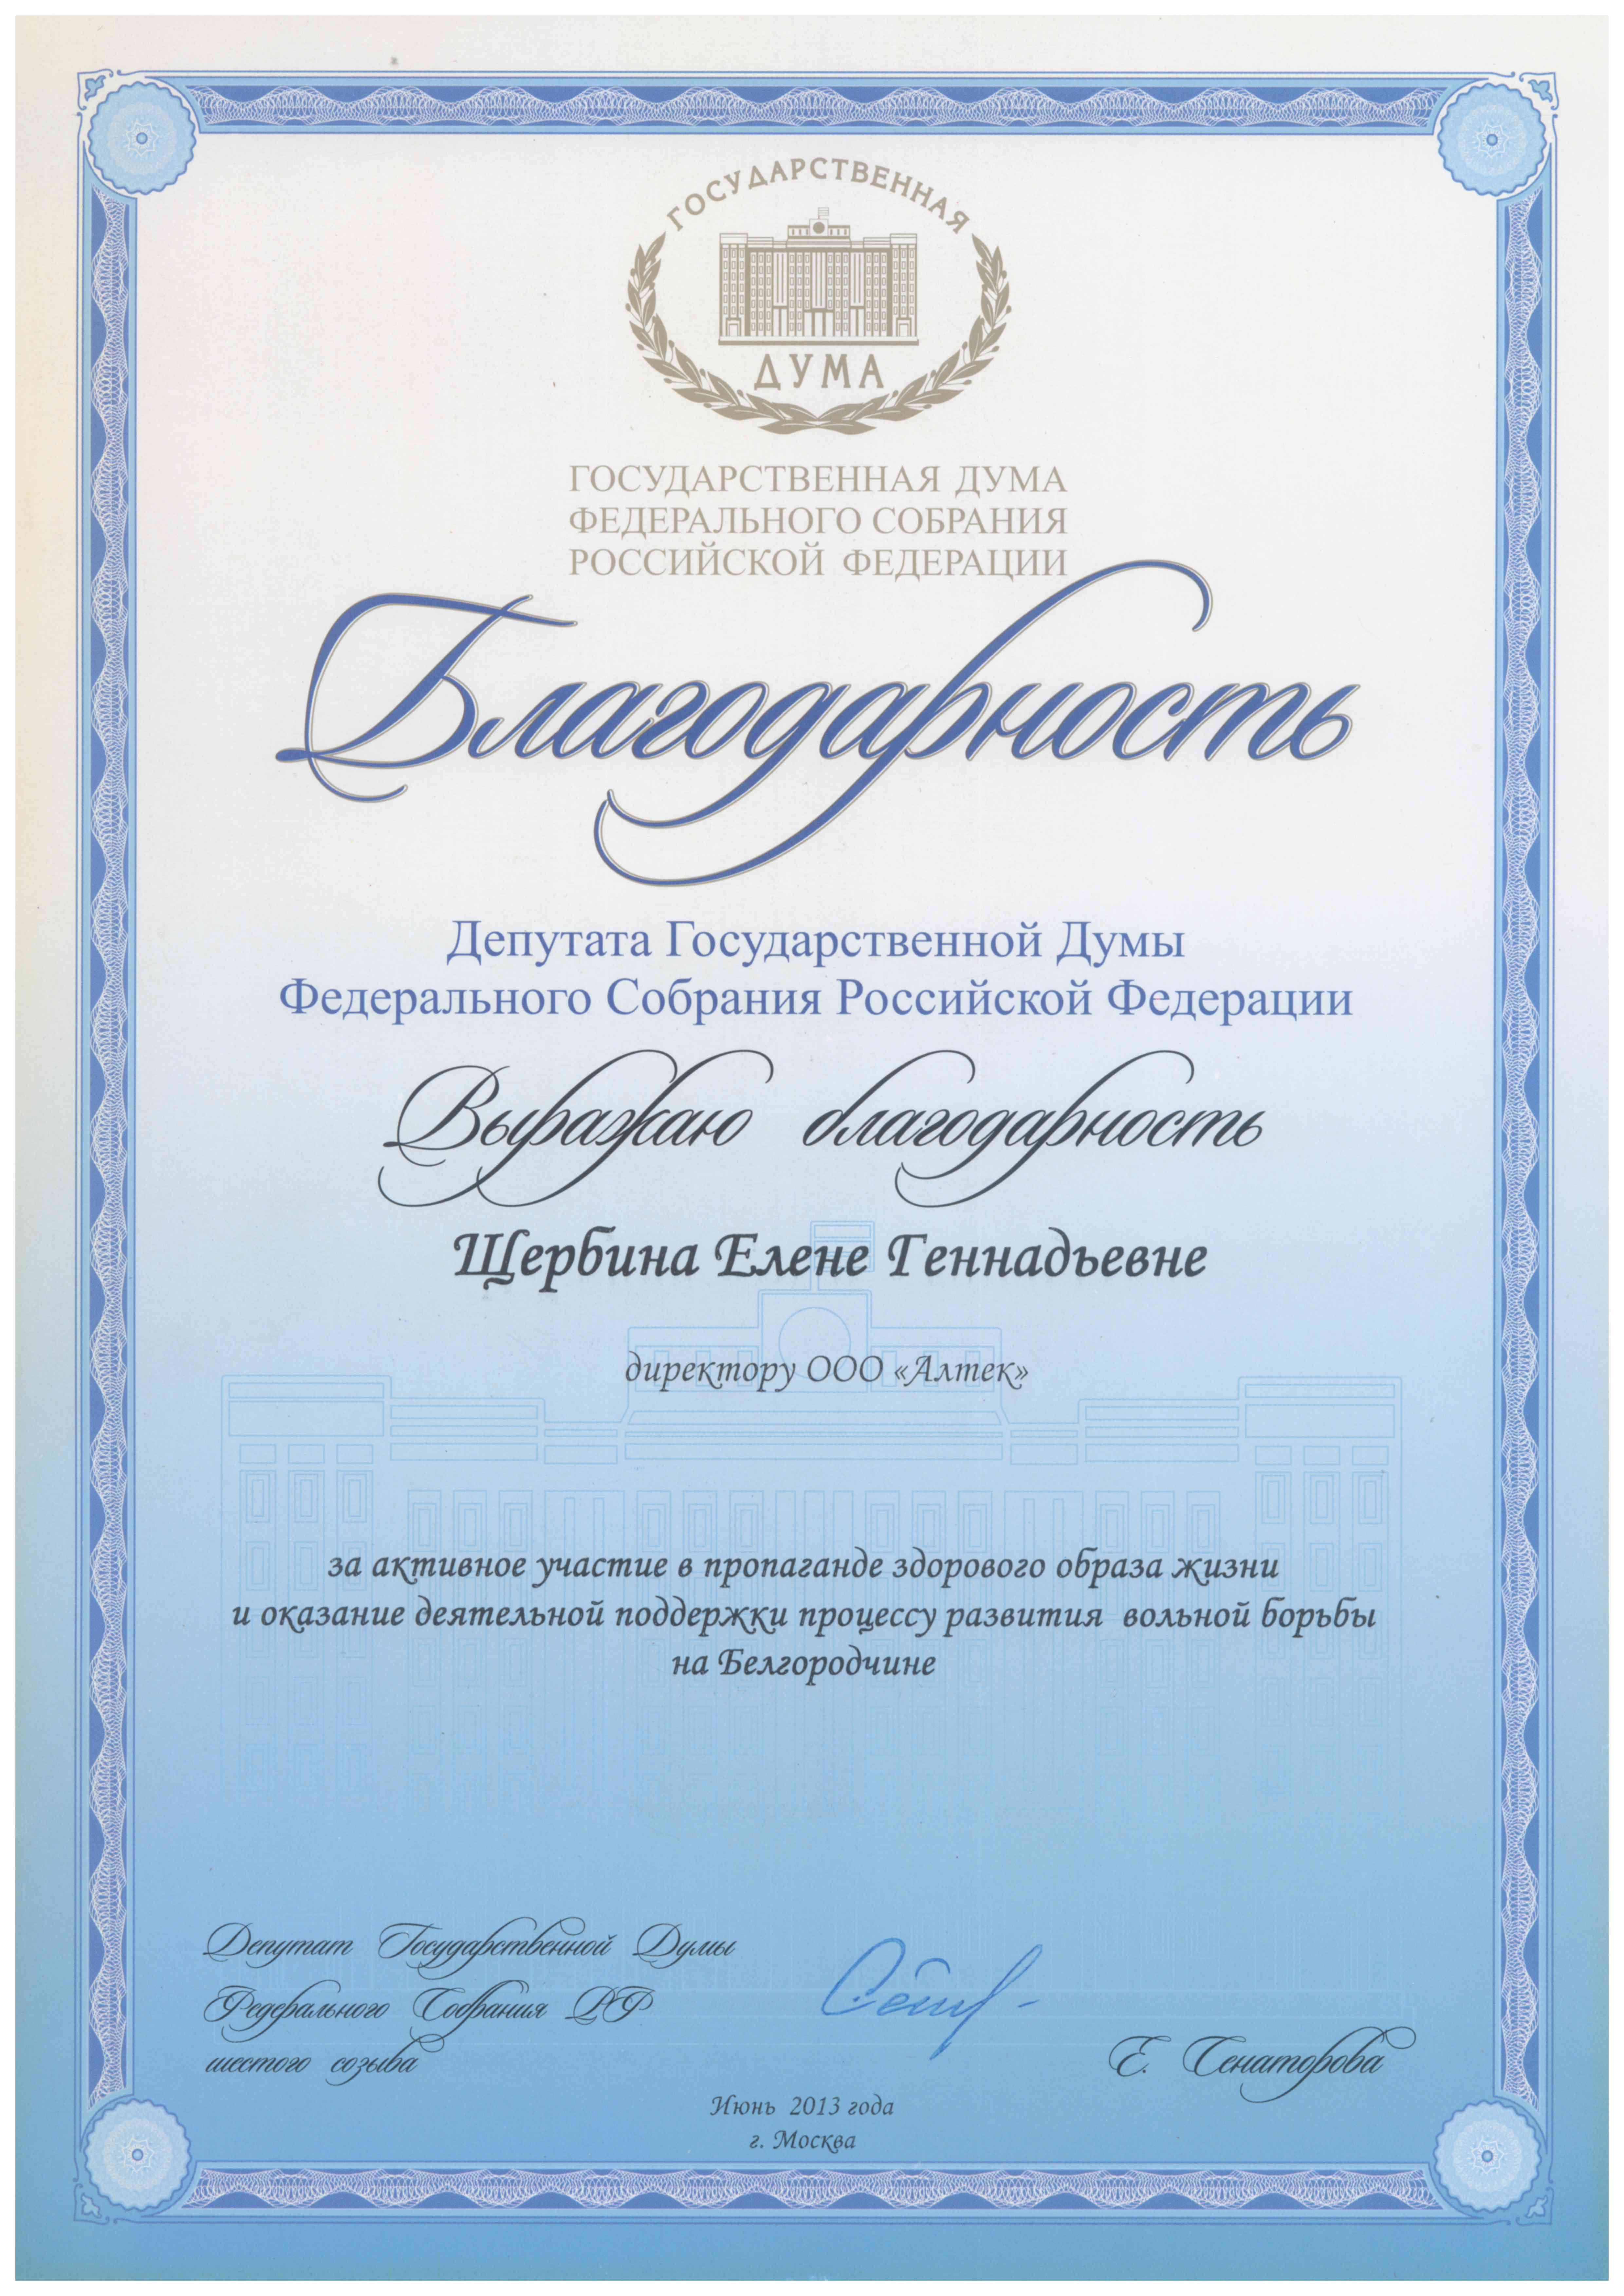 Dank des Abgeordneten der Staatsduma der Bundesversammlung der Russischen Föderation E. Senatarova